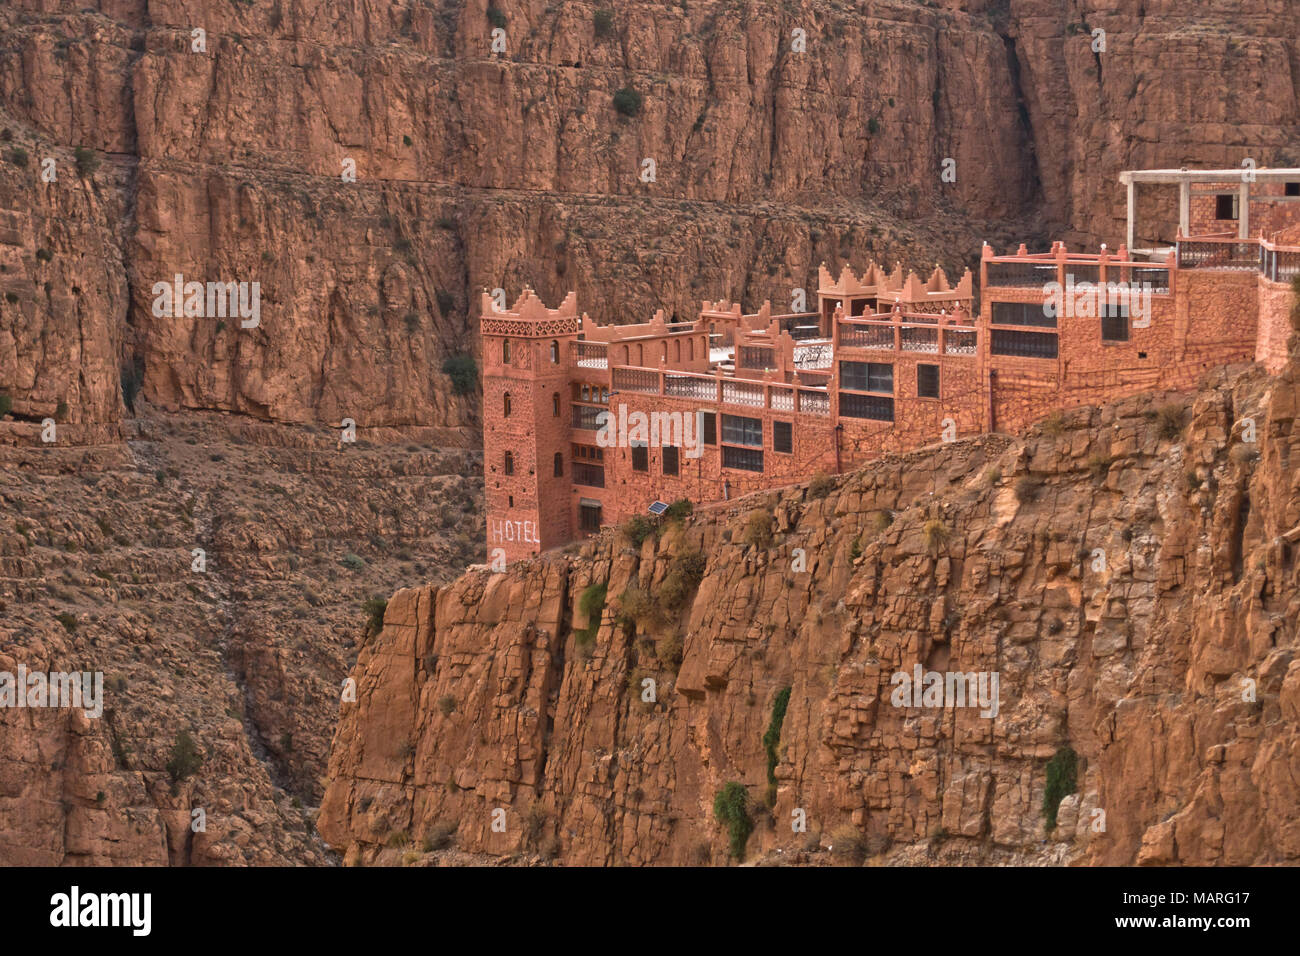 Hotel Casbah Stil am Rand einer Klippe auf Dadas Schlucht in Marokko Stockfoto